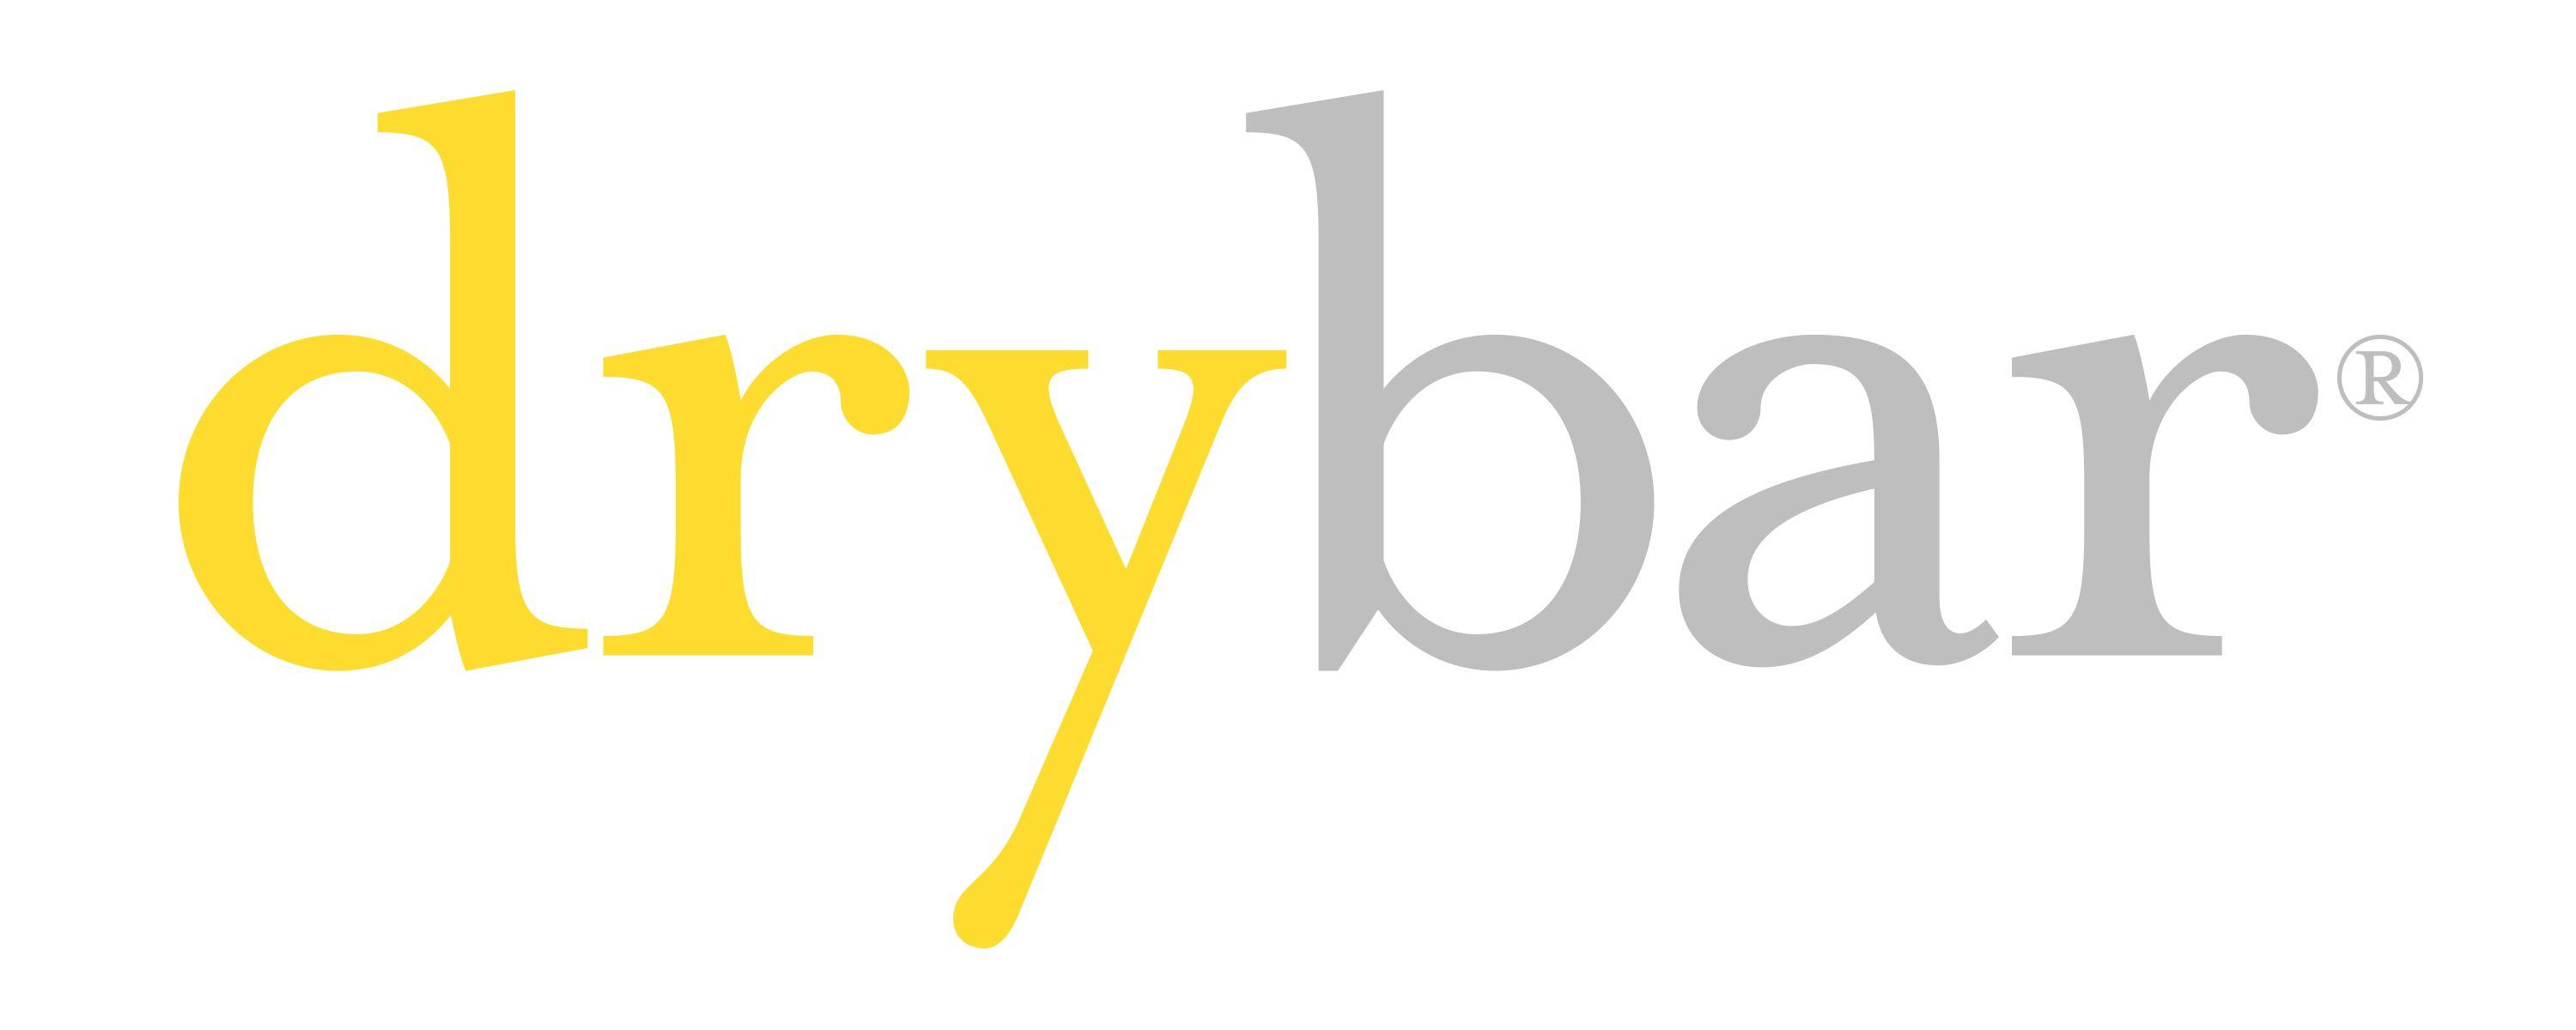 Drybar Logo - Drybar